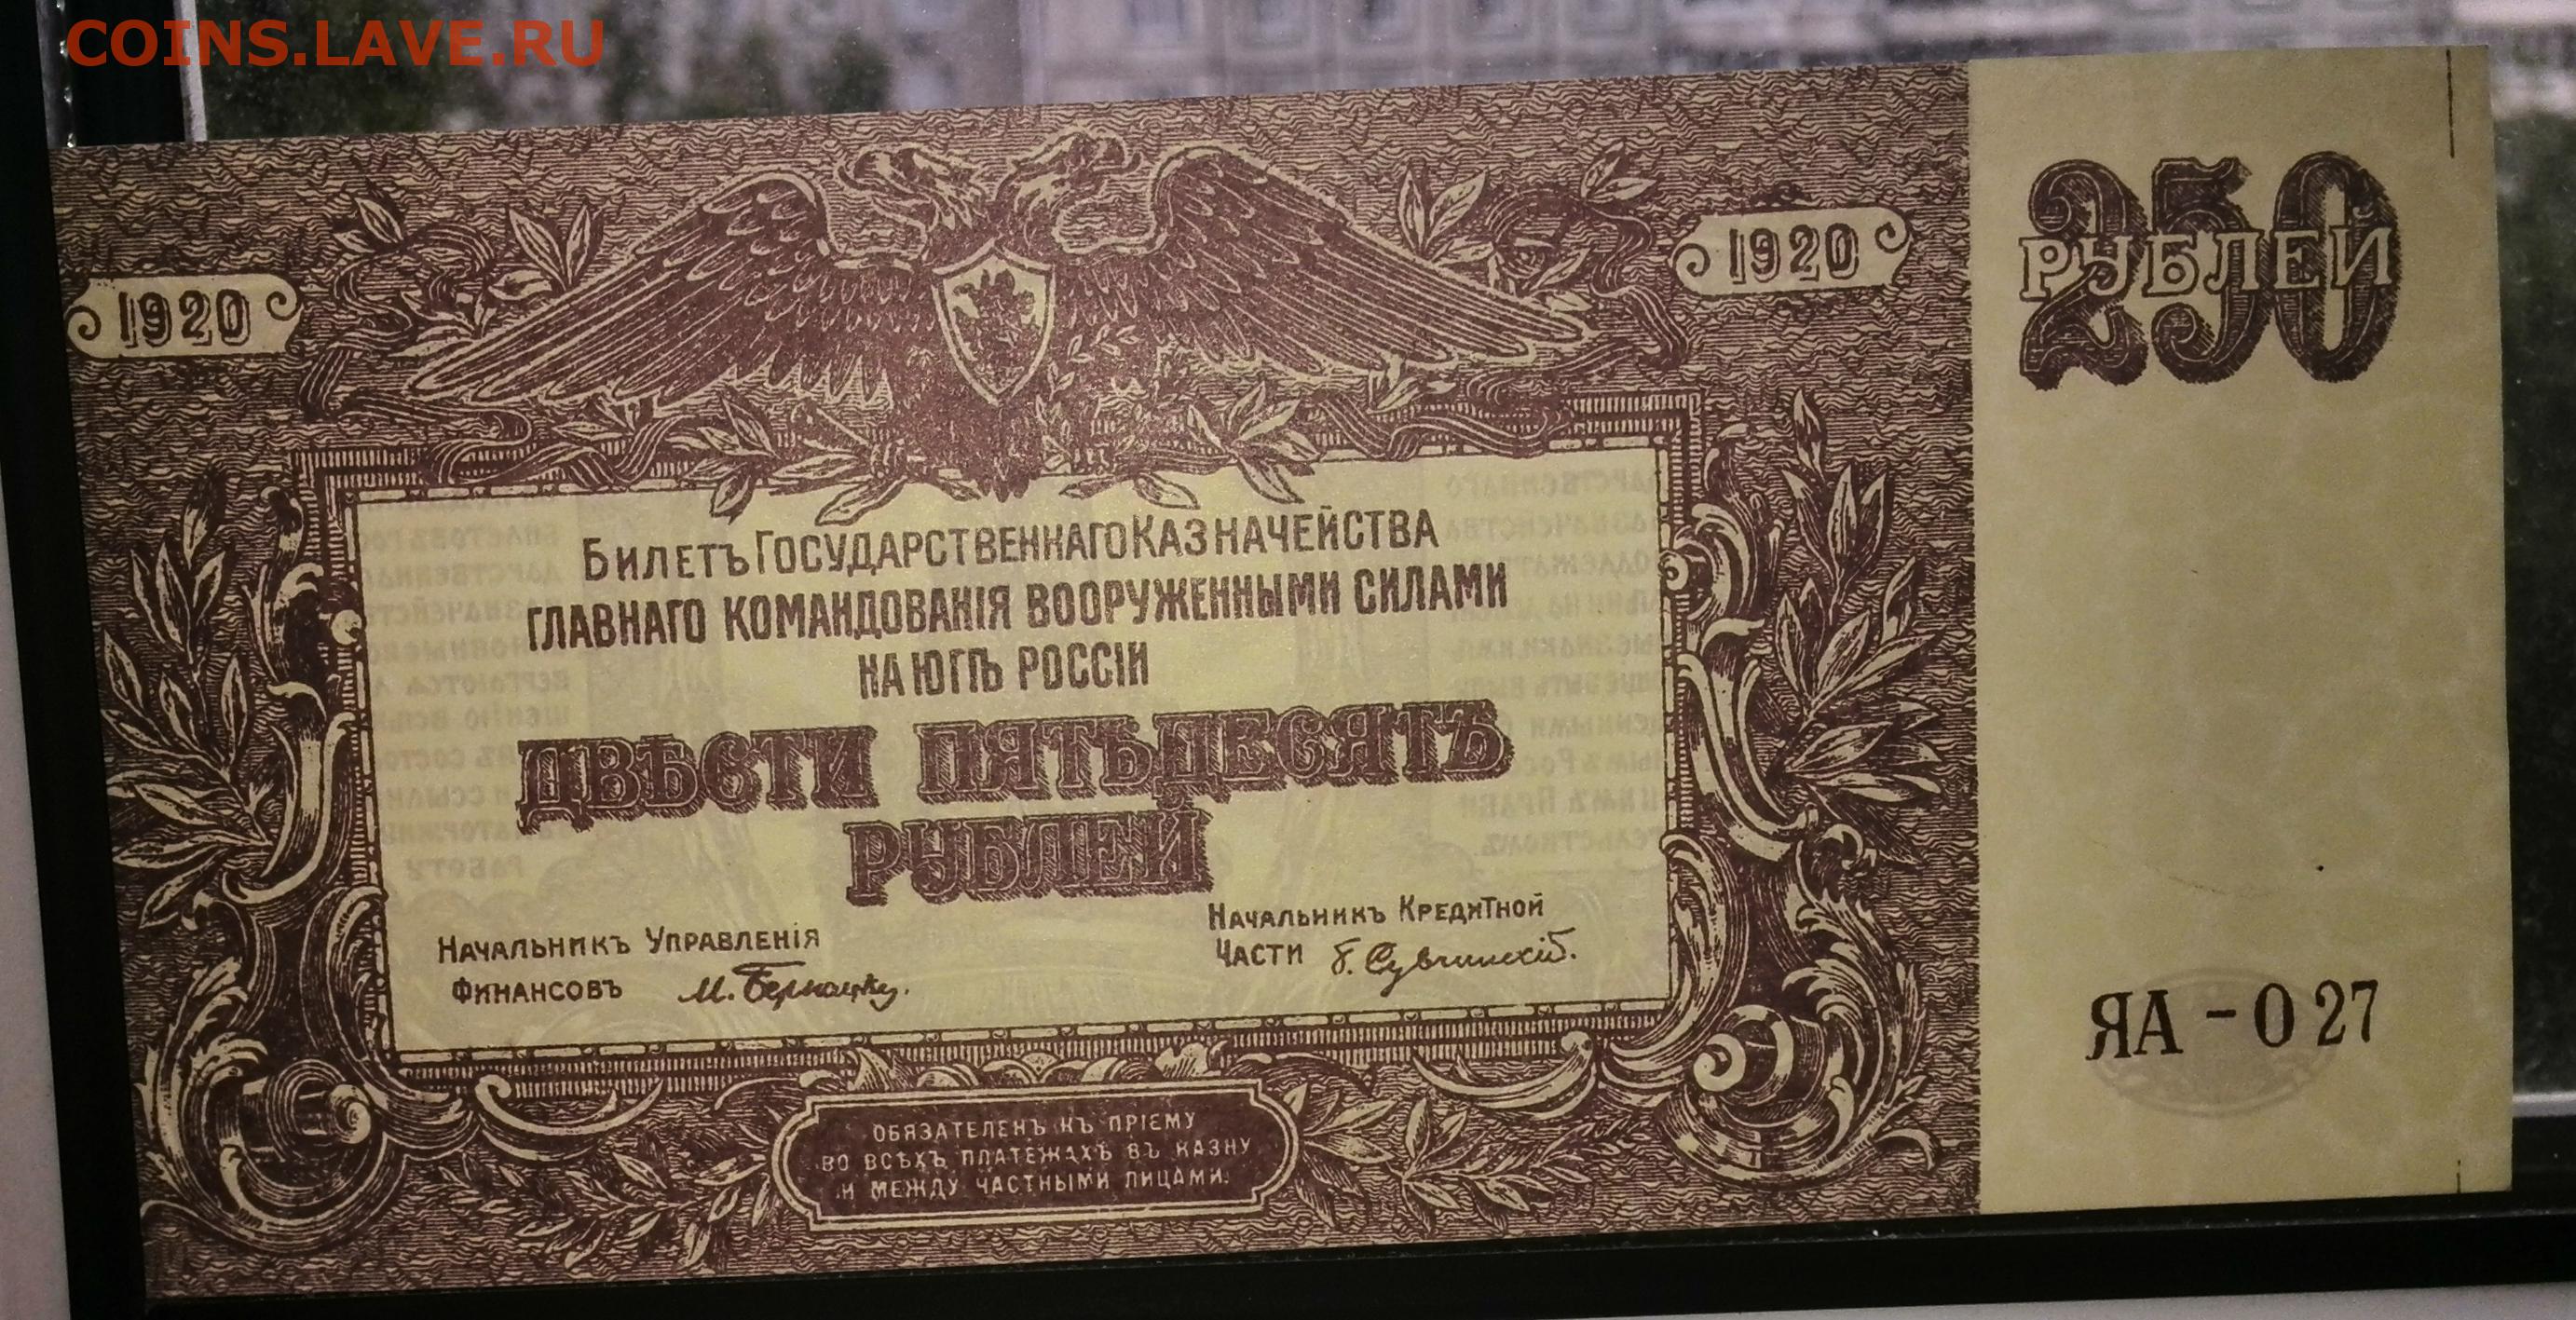 250 рублей билет. Рубль 1920. Рубль 1920 года. 1000000 Рублей 1920 год. 250 Рублей 1839 билеты государственного казначейства.